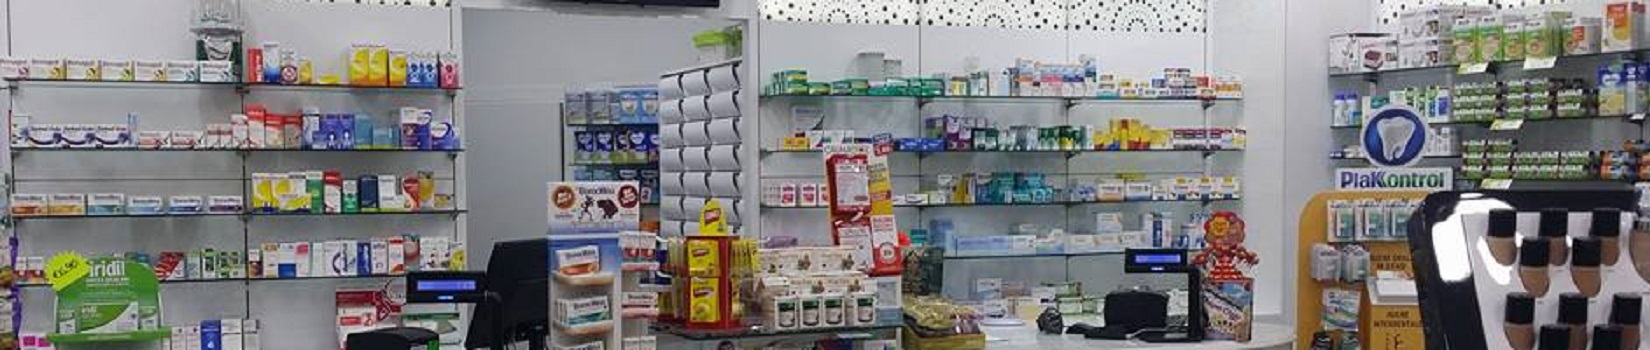 Farmacia La Fenice Colleferro Scalo